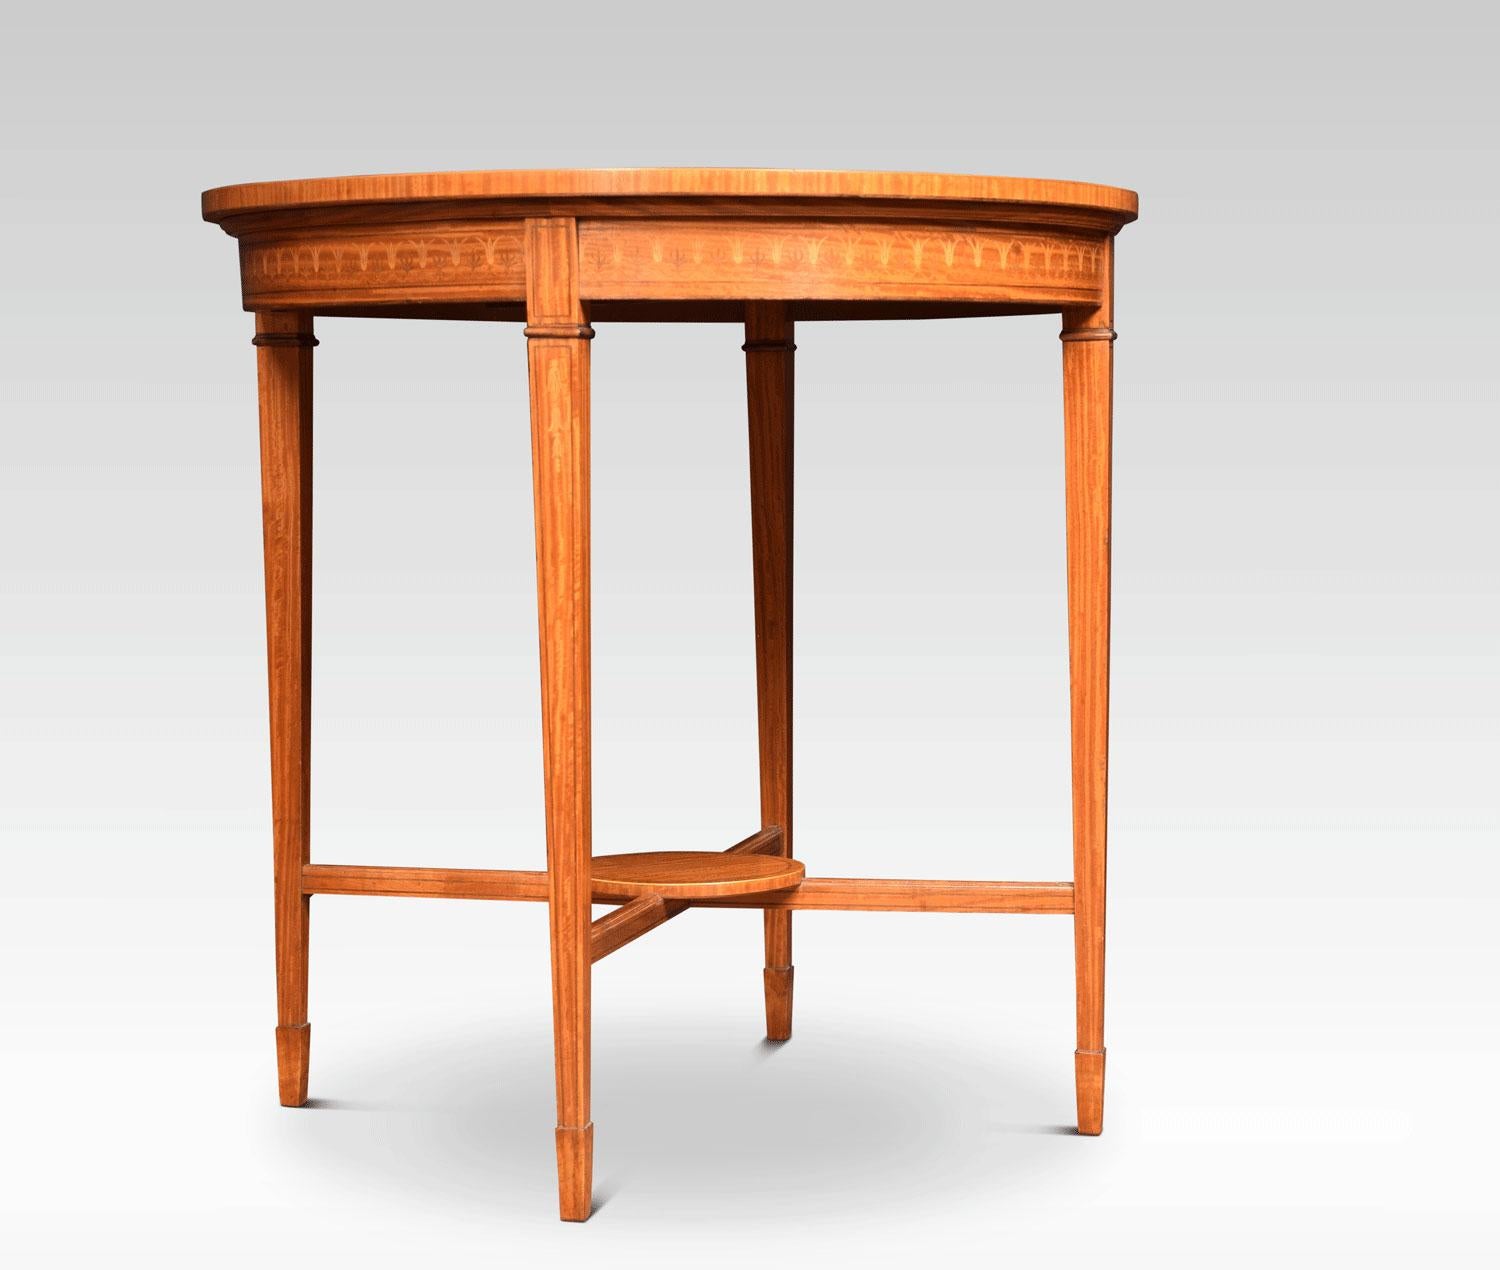 Edwardianischer Tisch mit Intarsien aus satiniertem Holz. Die runde, kreuzförmige Platte wird von einem Buchsbaum- und Hartholz-Blumenmotiv inmitten einer Hasenglöckchen-Girlande eingerahmt. Das Ganze steht auf vier quadratischen, spitz zulaufenden